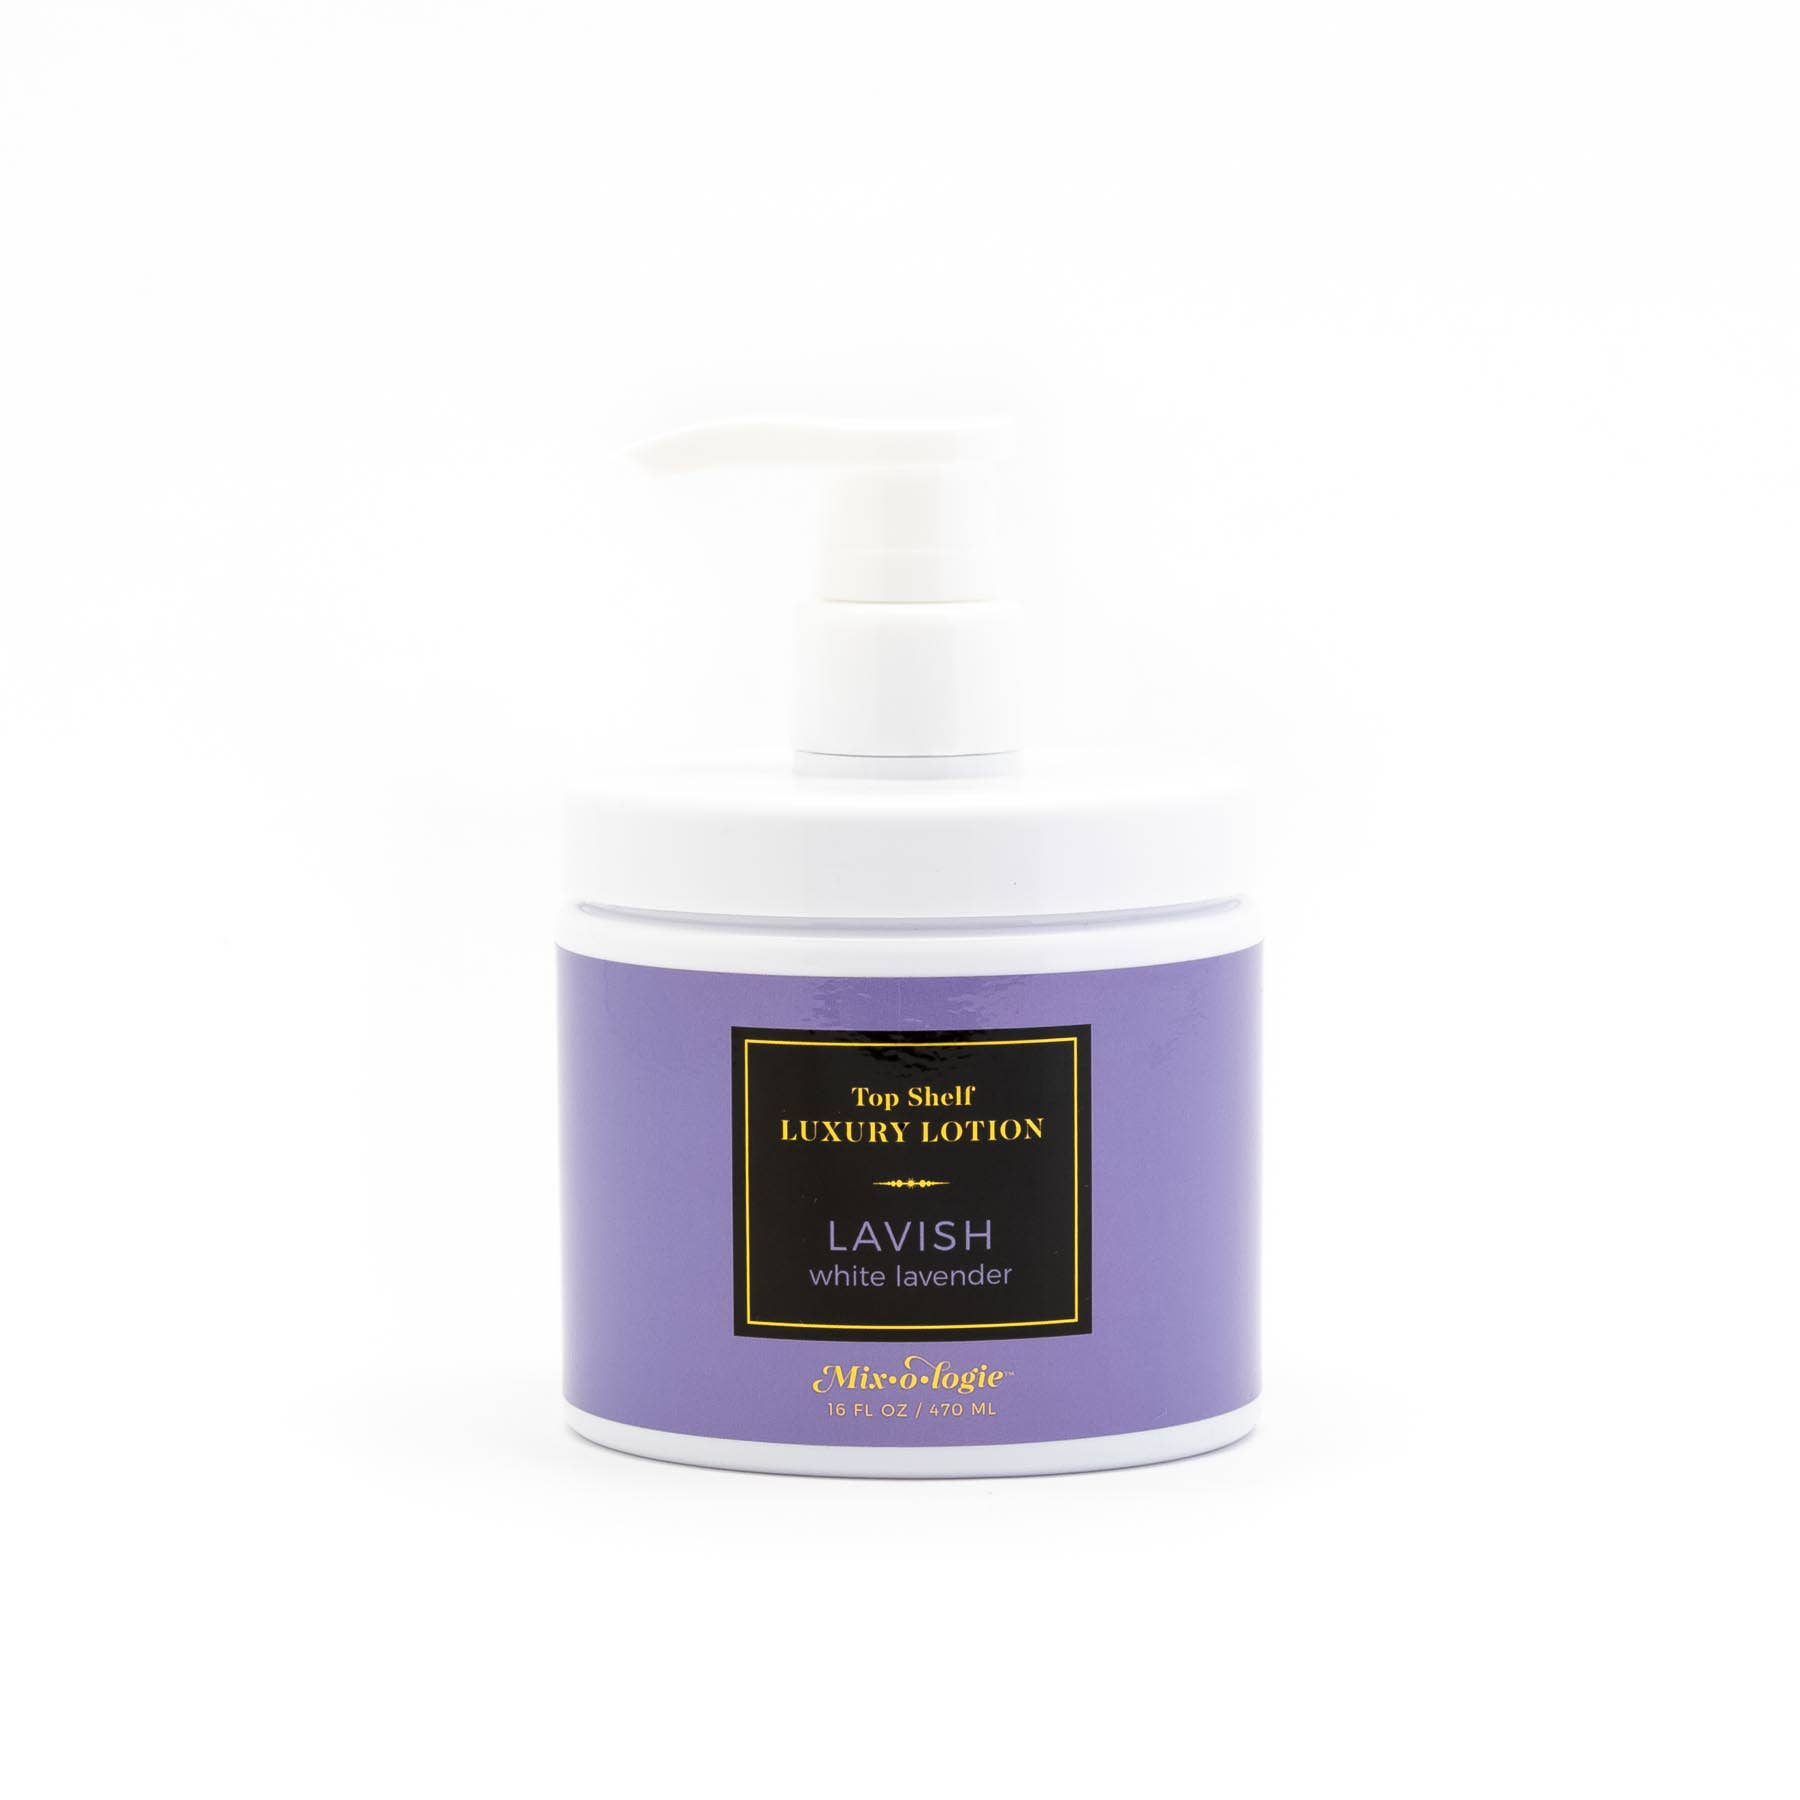 Bare (seductive saffron) - Perfume Oil Rollerball (5 mL)